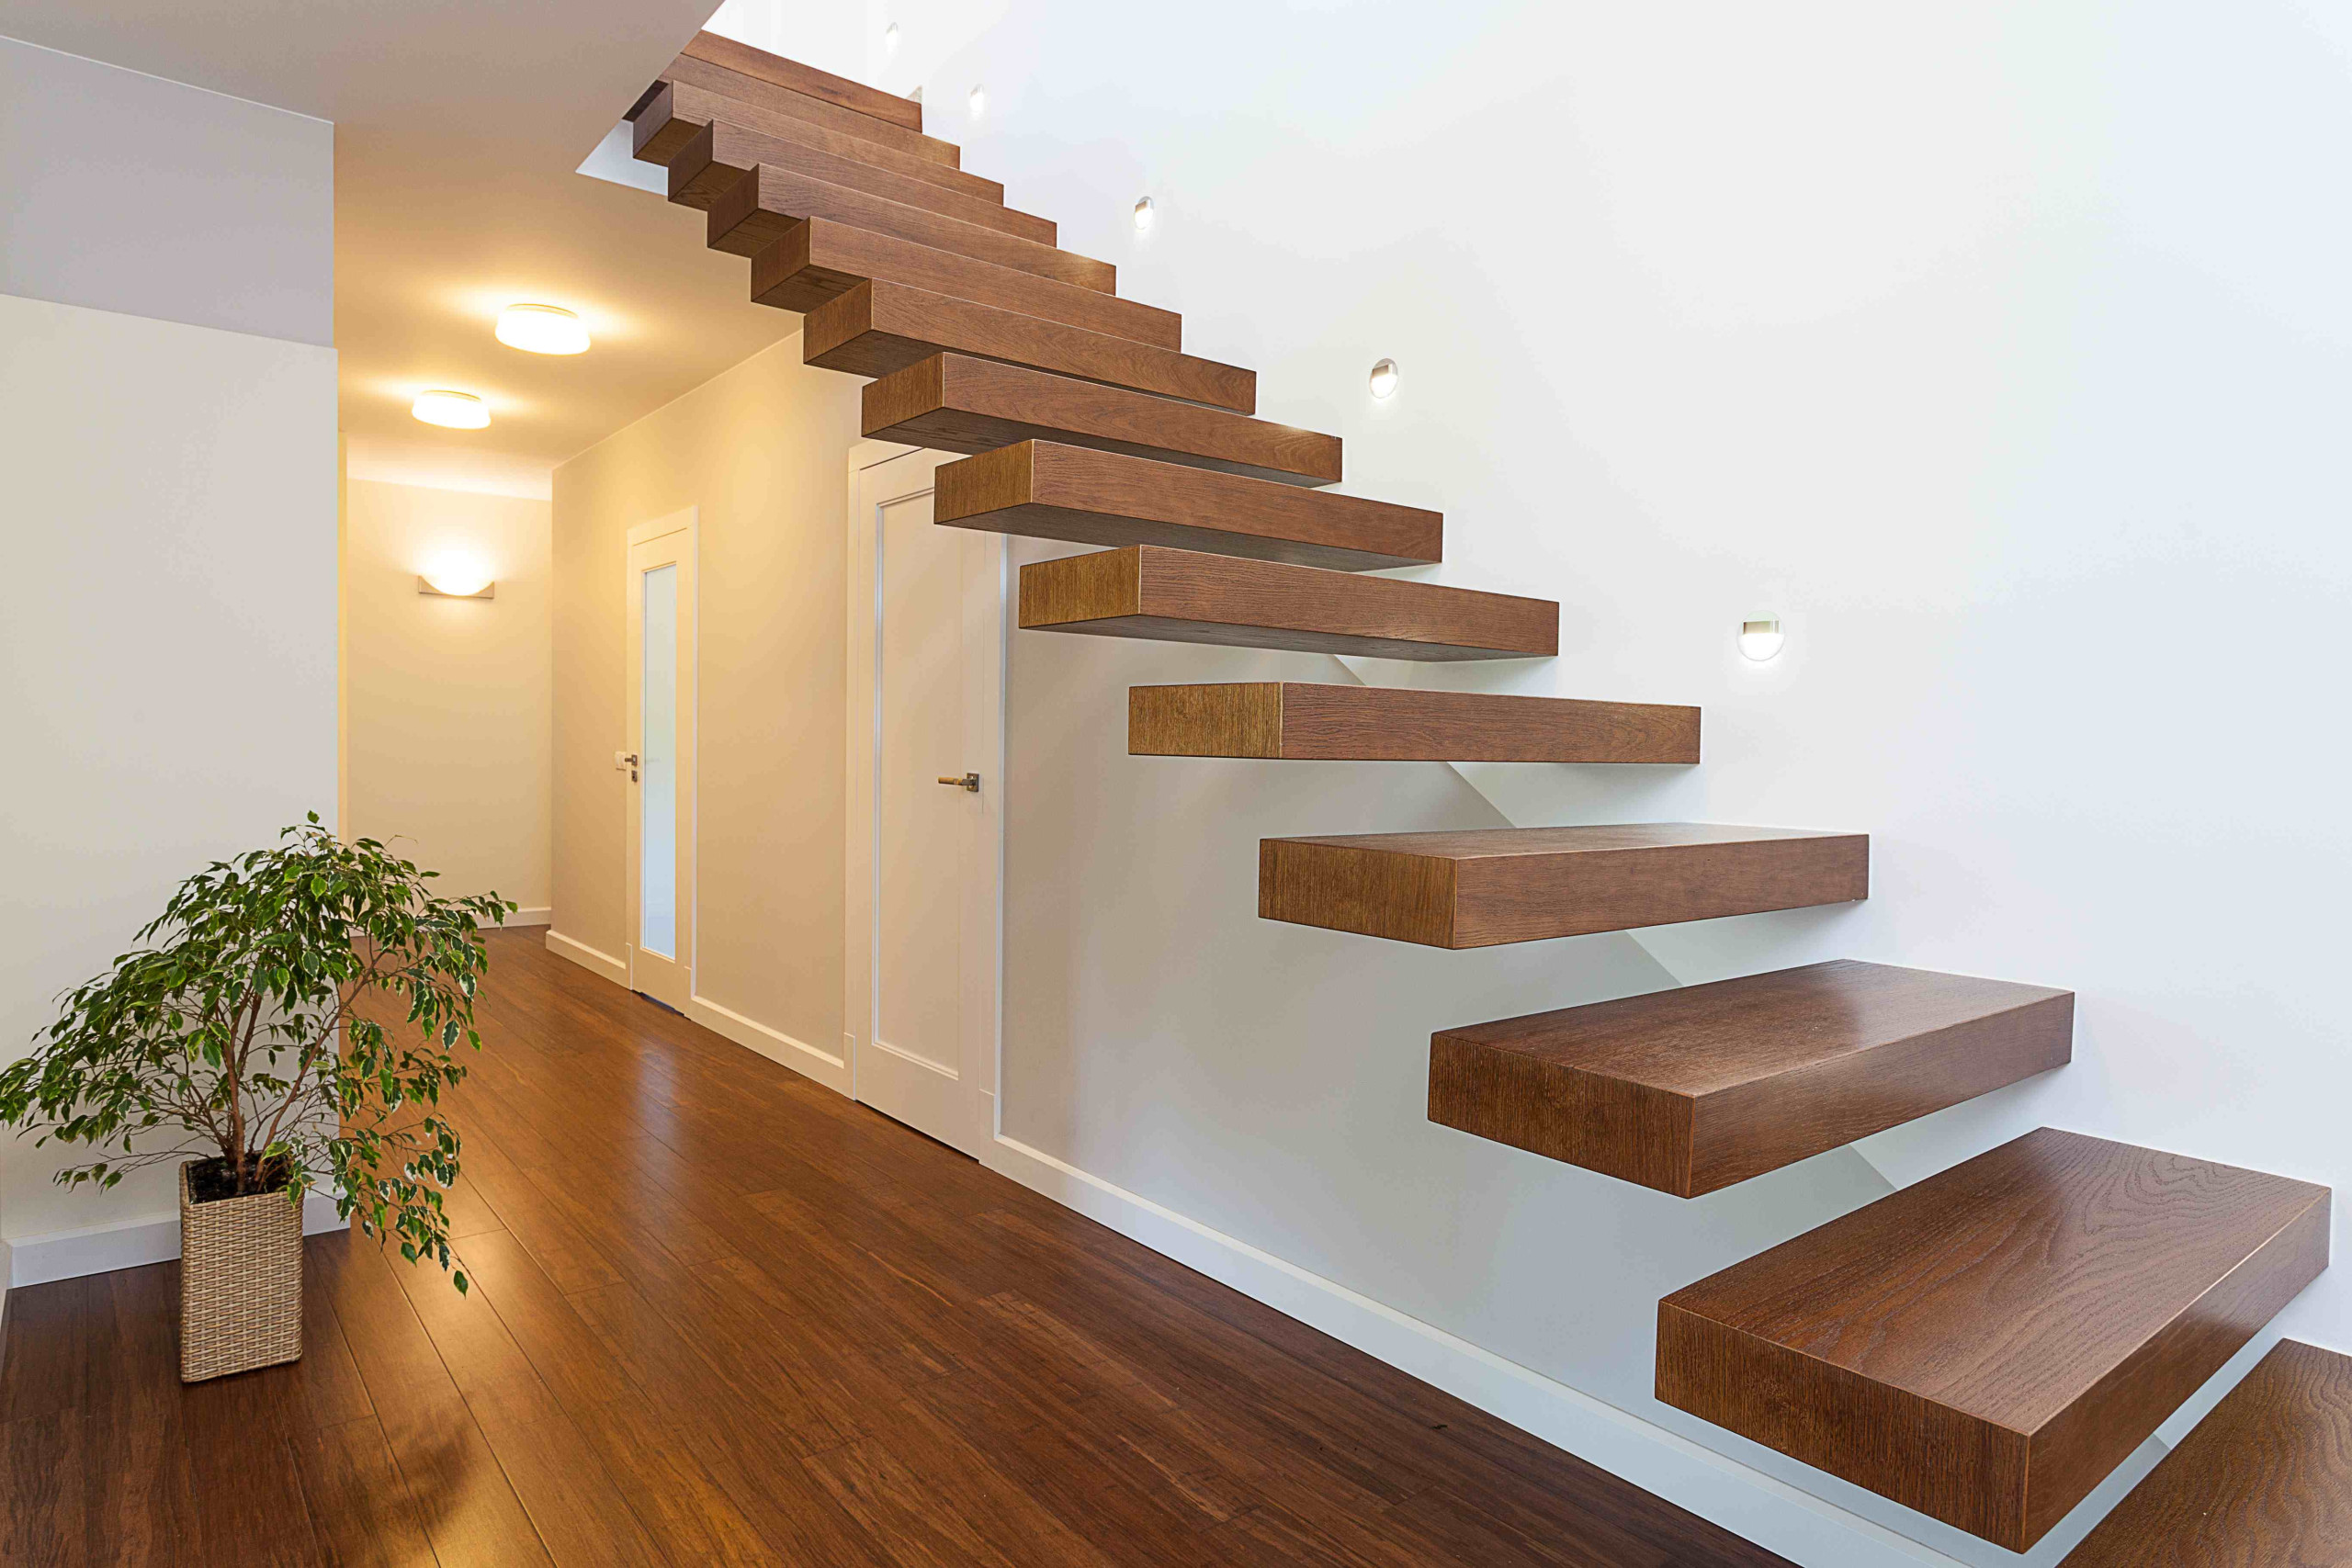 Rajeunir un escalier en bois : redonnez vie à votre intérieur !